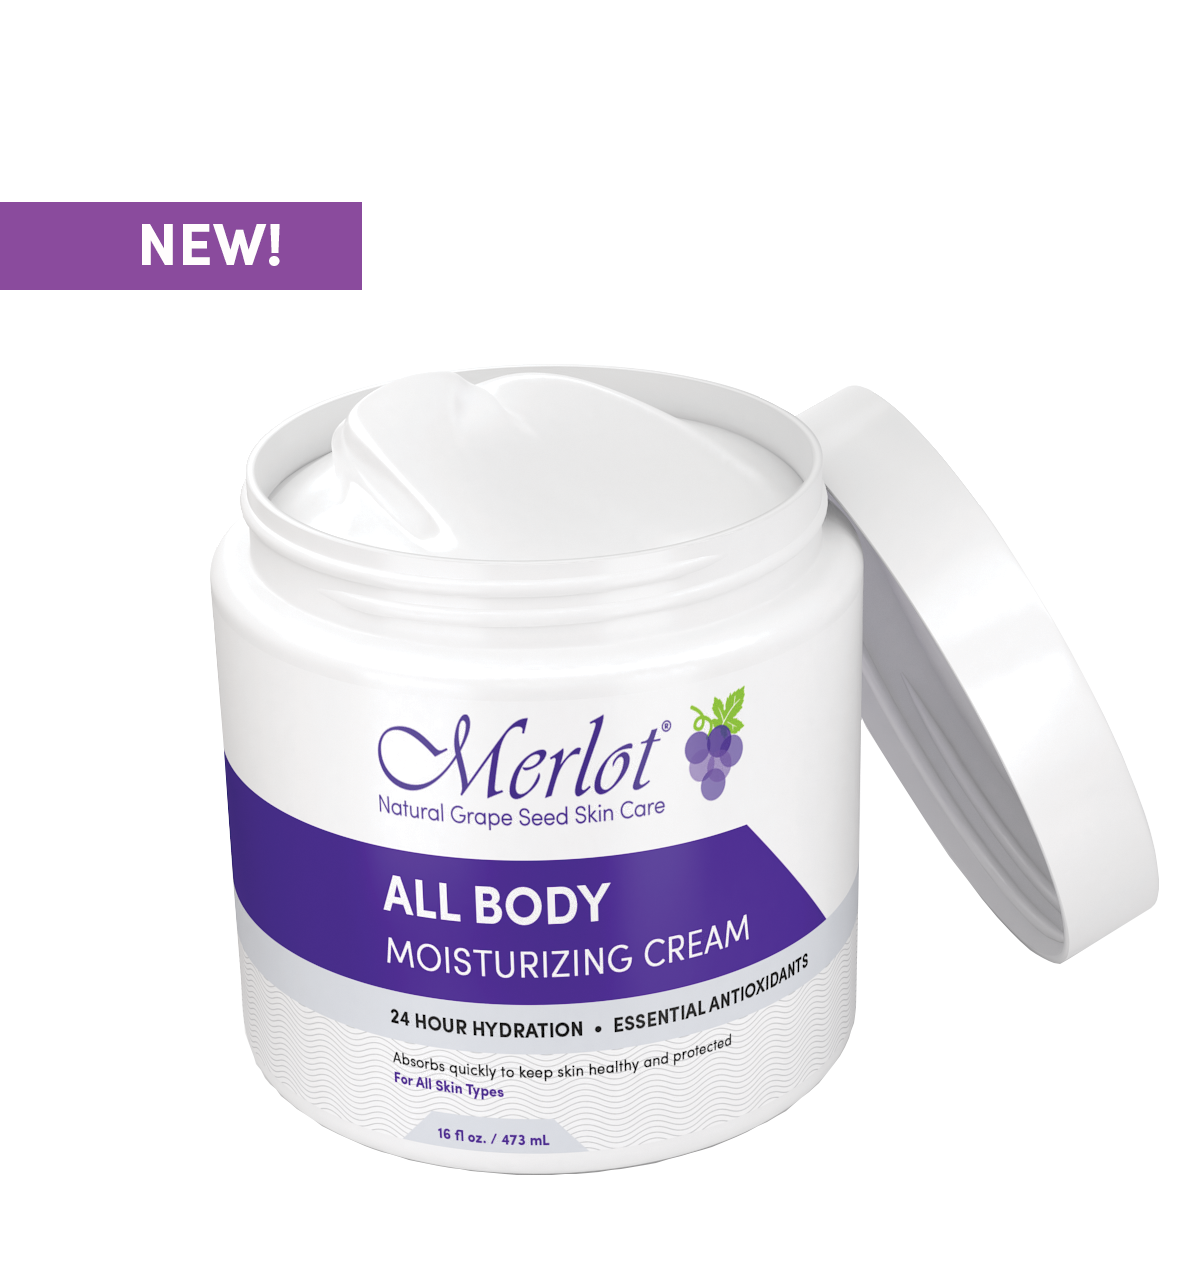 NEW: All Body Moisturizing Cream from Merlot Skin Care